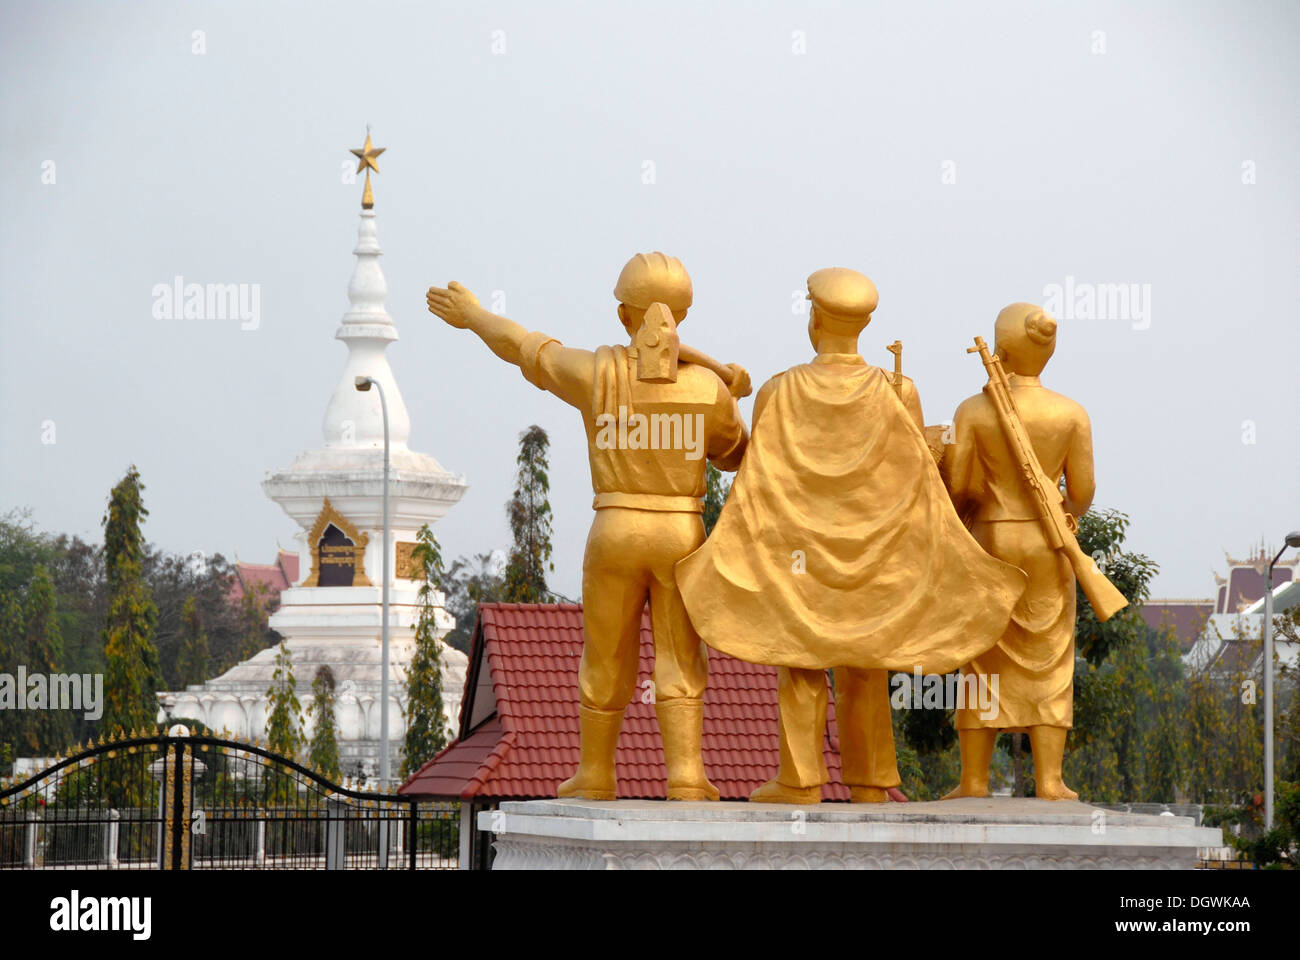 Guerra del Vietnam, golden comunista statue del guerriero, il laotiano esercito museo memoriale stupa con star, Vientiane, Laos, sud-est asiatico Foto Stock